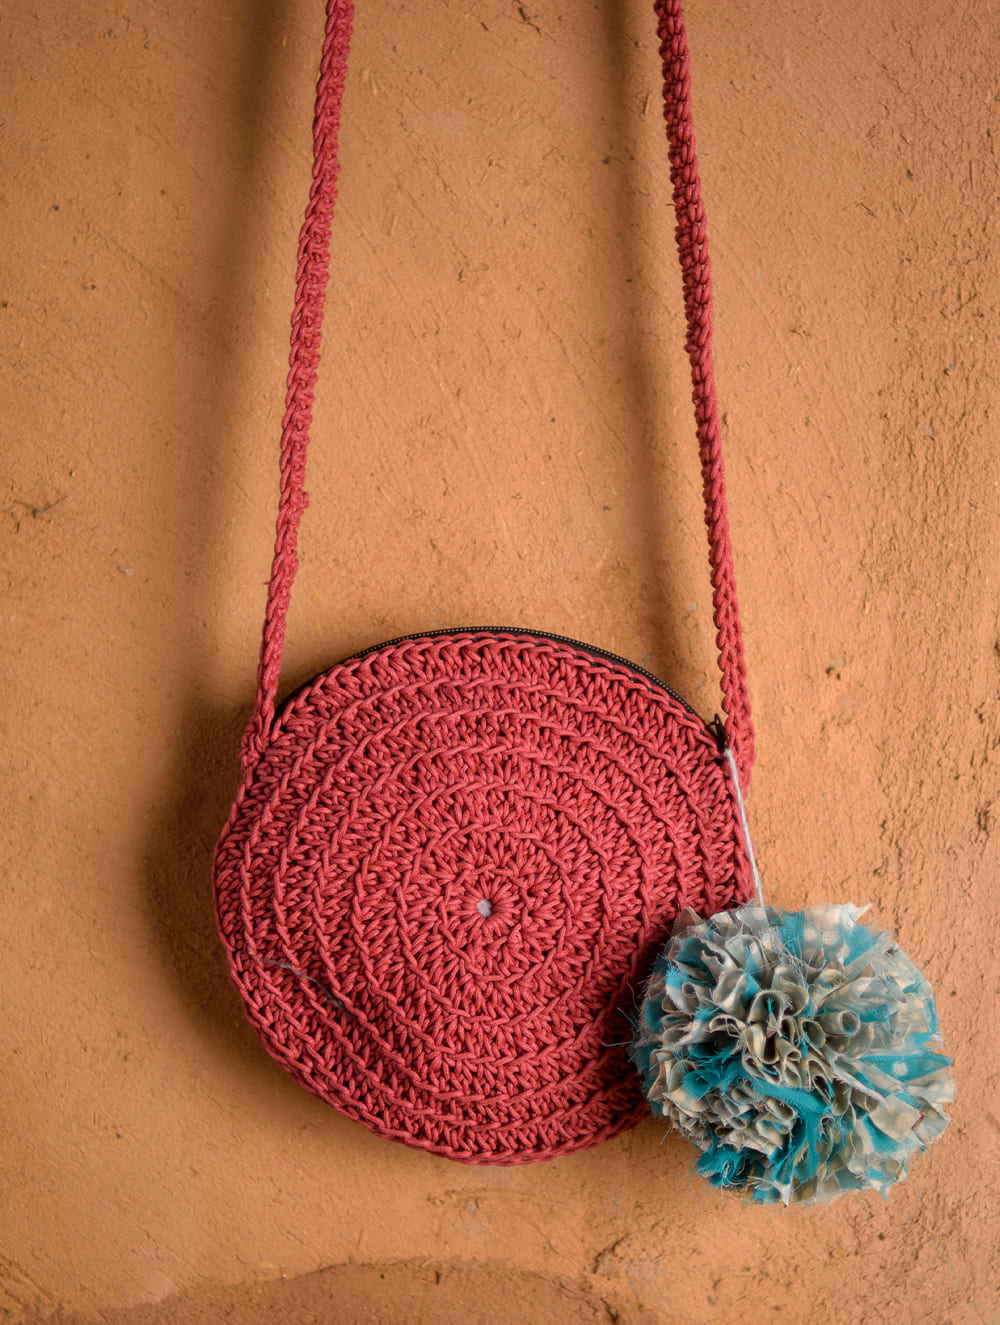 Crochet Bag || Macrame Bag || Crochet bag new design - YouTube